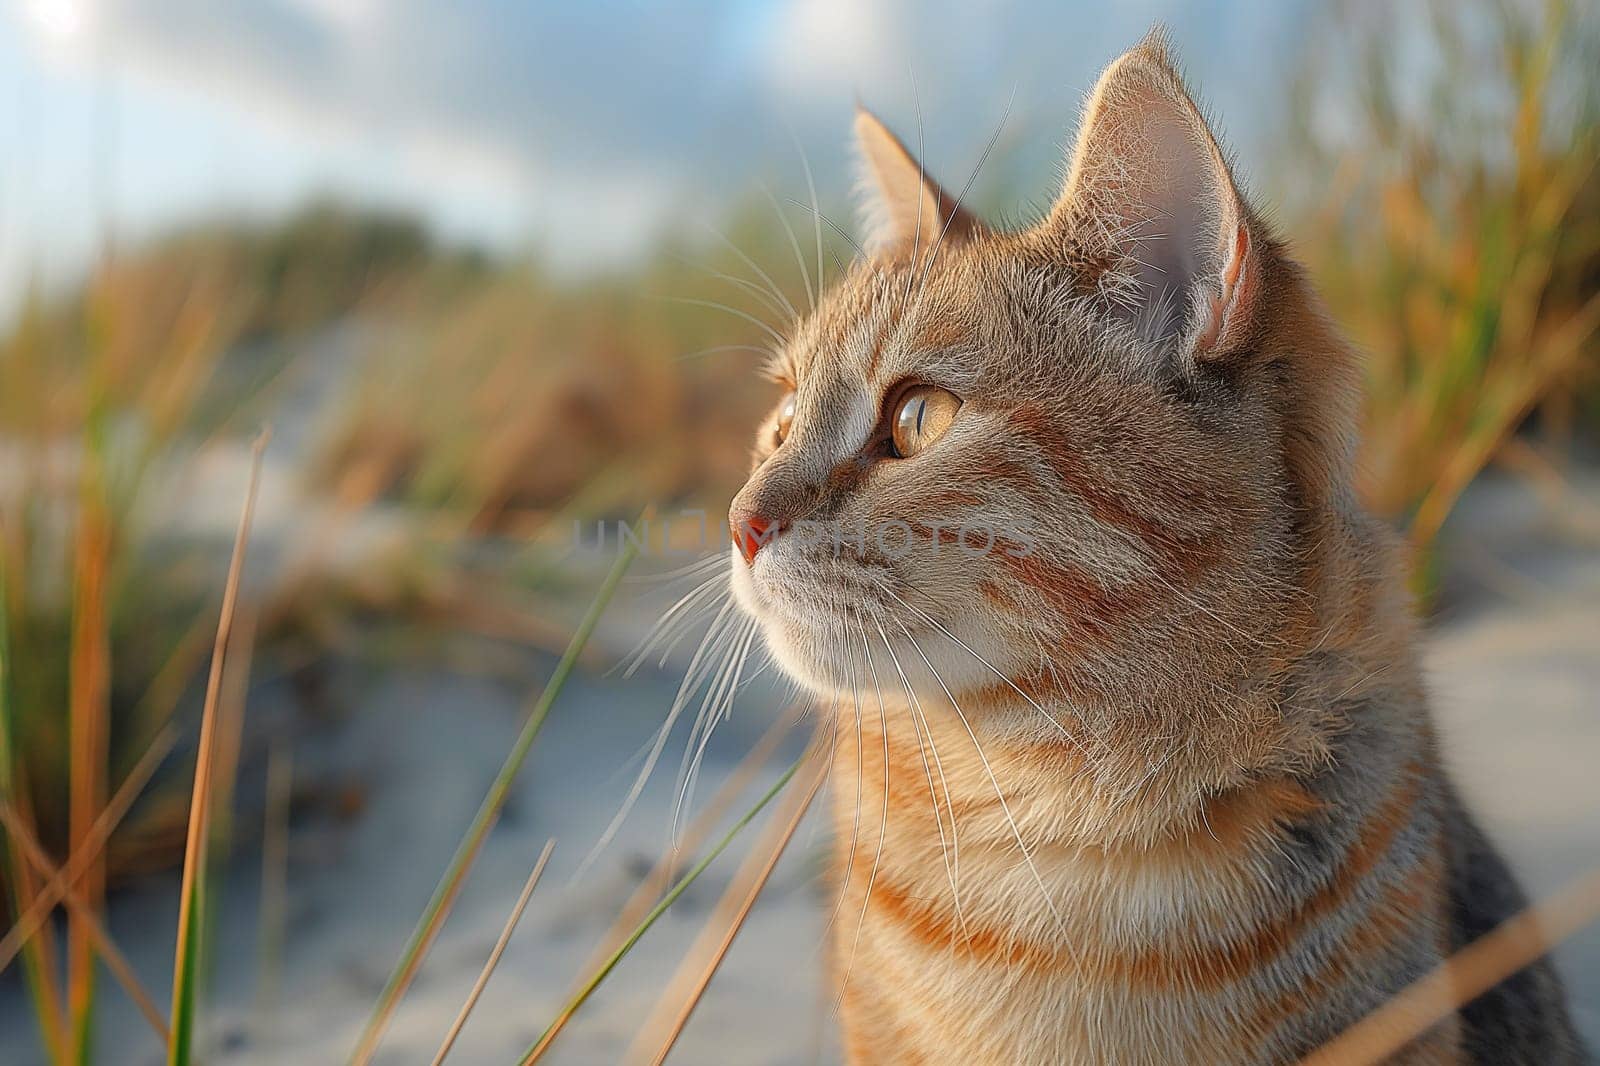 A cat on a tropical beach on sunny day